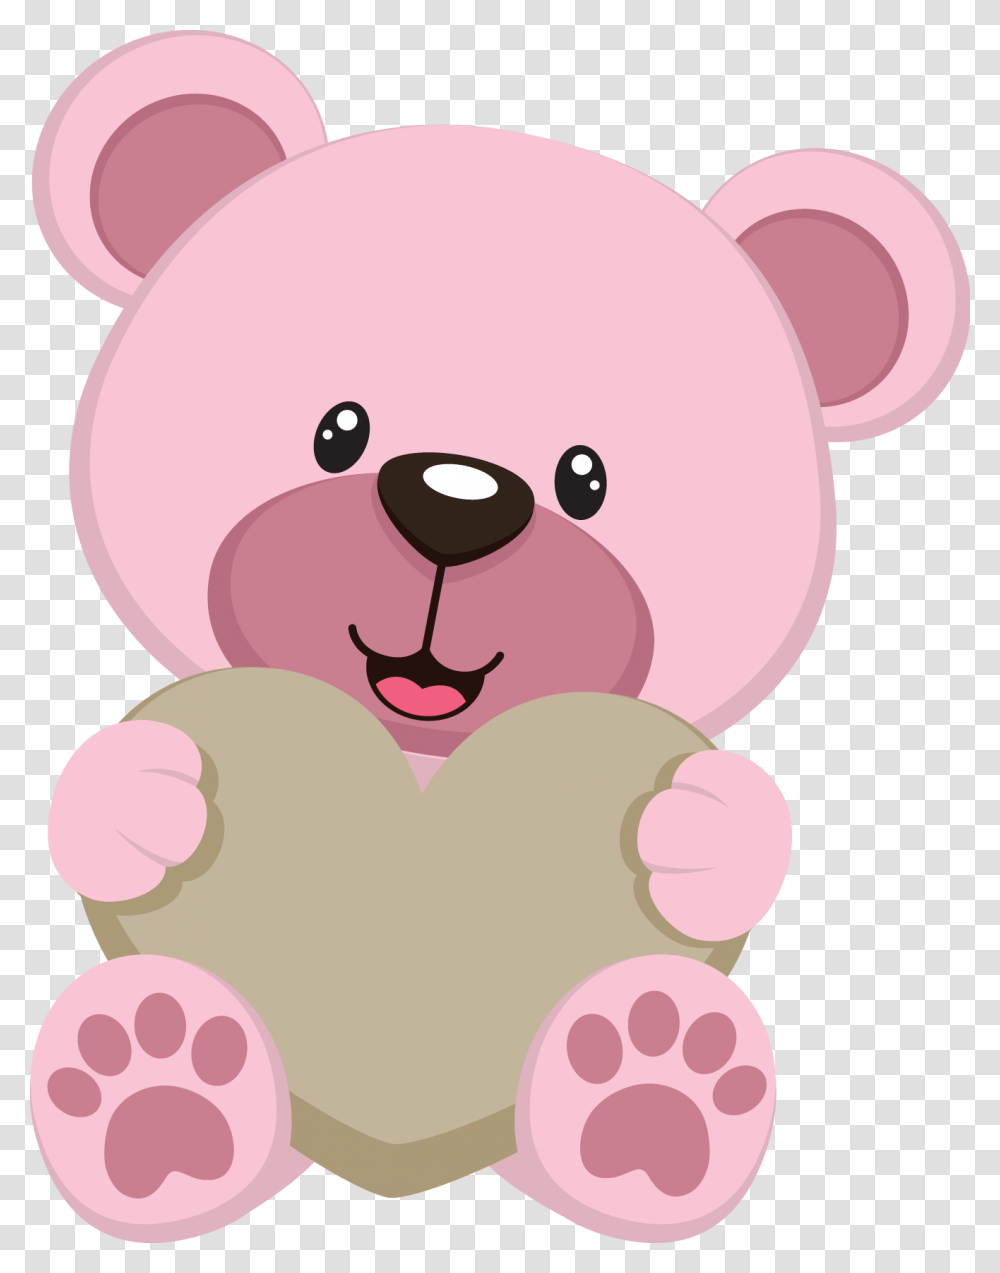 Bear Clipart Teddy Bear Party Cute Teddy Bears Teddy Pink Teddy Bear Clipart, Toy, Transparent Png